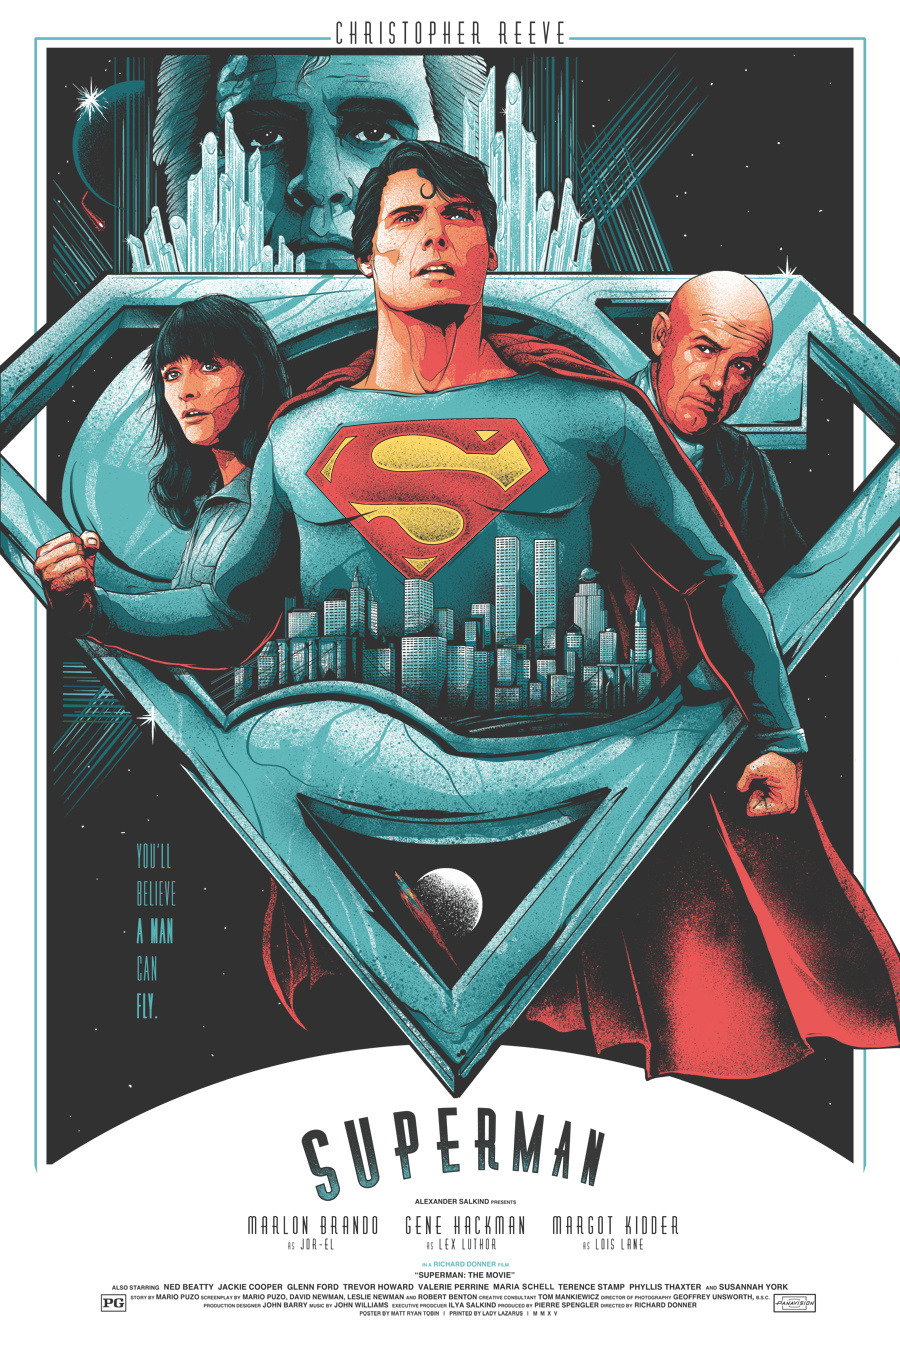 Superman fan art movie poster